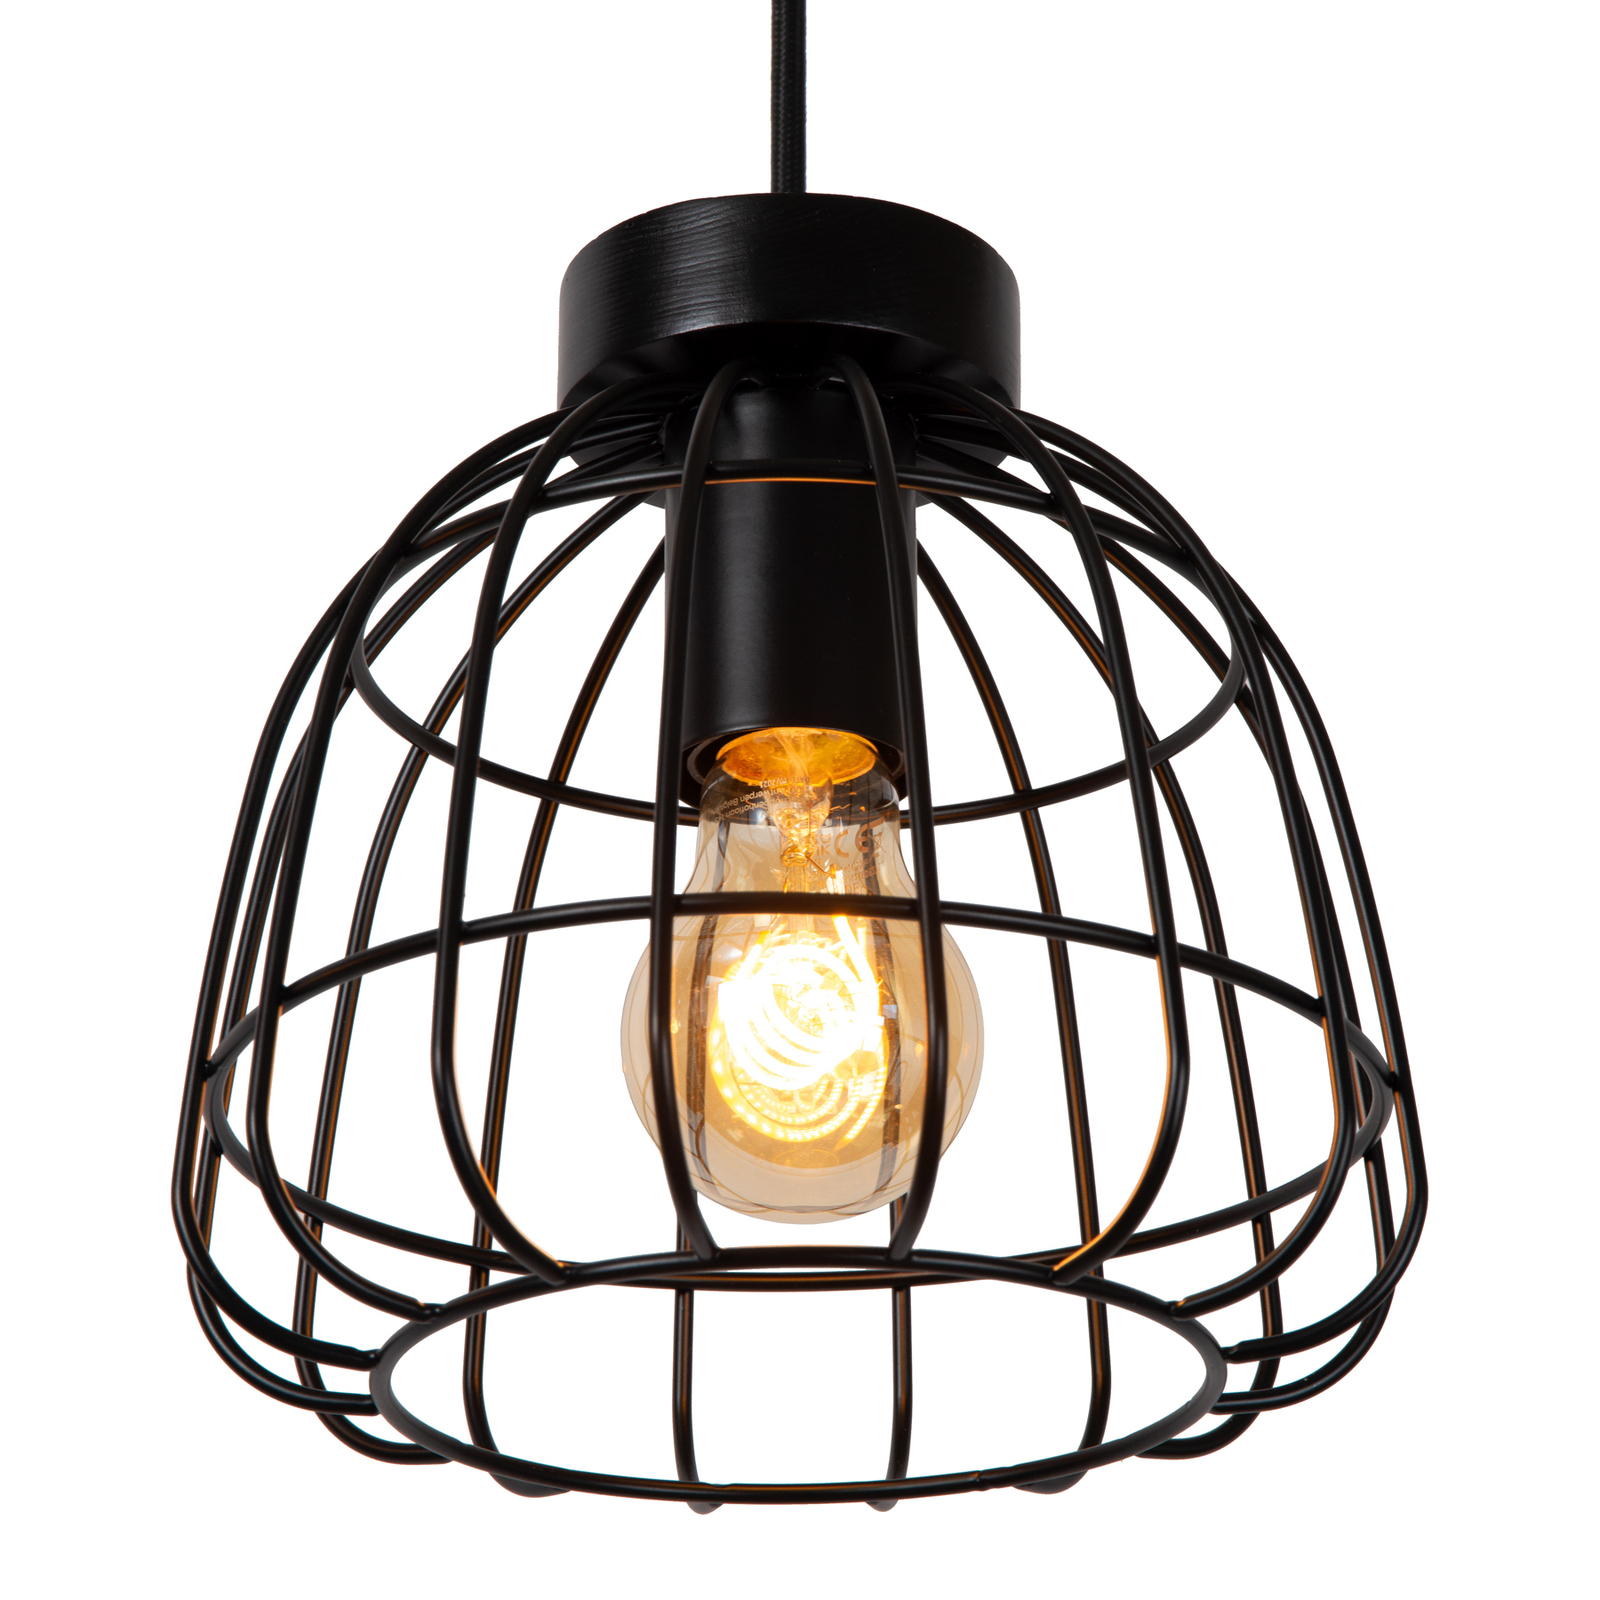 Hanglamp Filox, zwart, 3-lamps, langwerpig